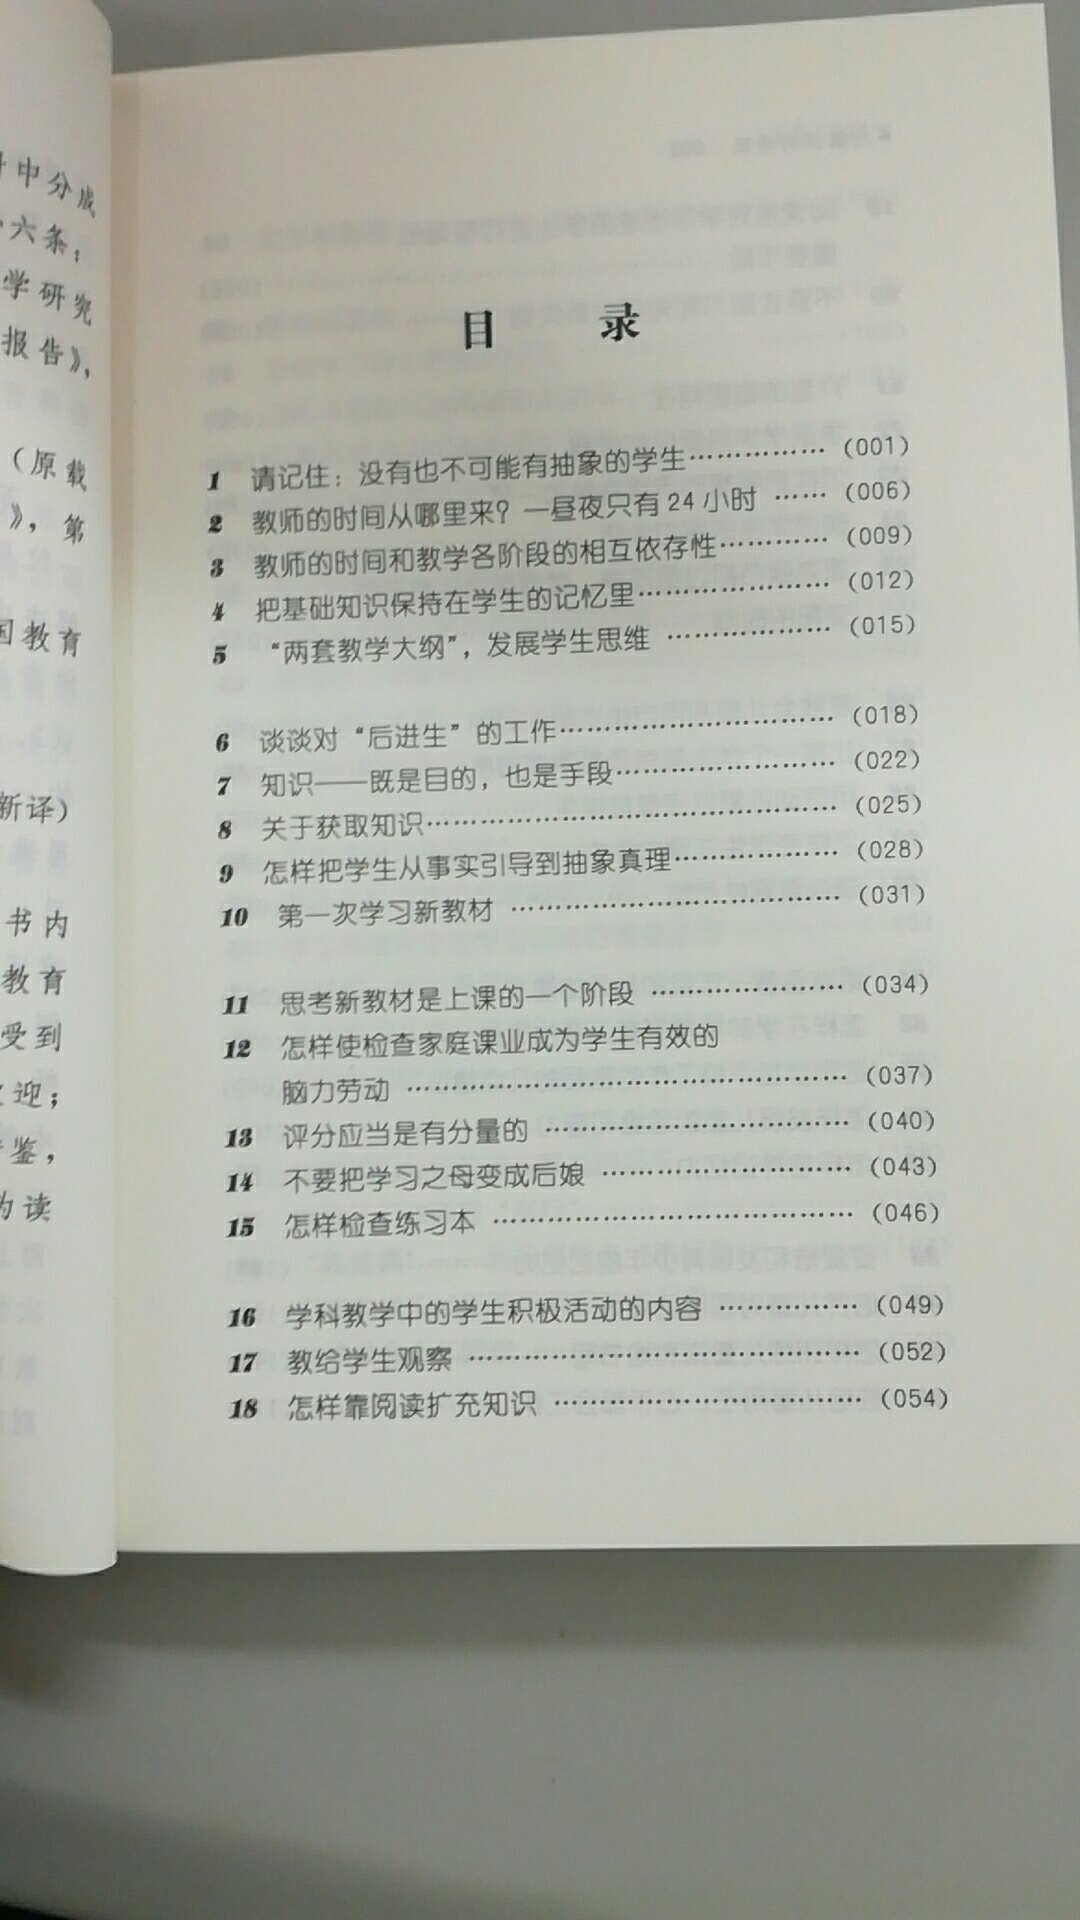 教育学方面的著作，尹建莉推荐书目。